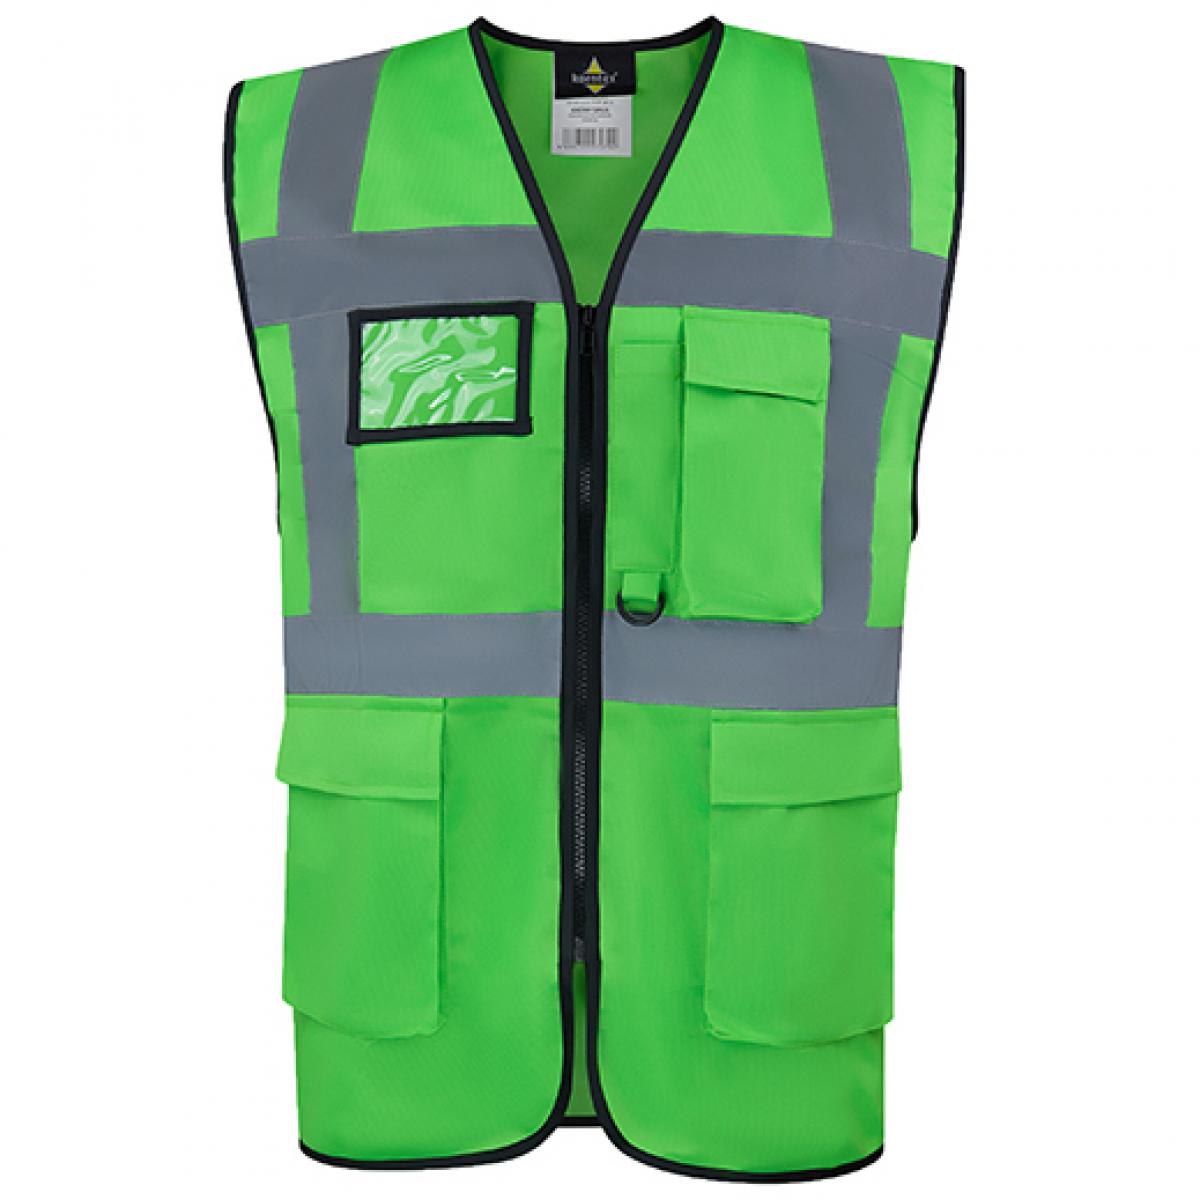 Hersteller: Korntex Herstellernummer: KXCMF Artikelbezeichnung: Comfort Executive Multifunctional Safety Vest Hamburg Farbe: Green